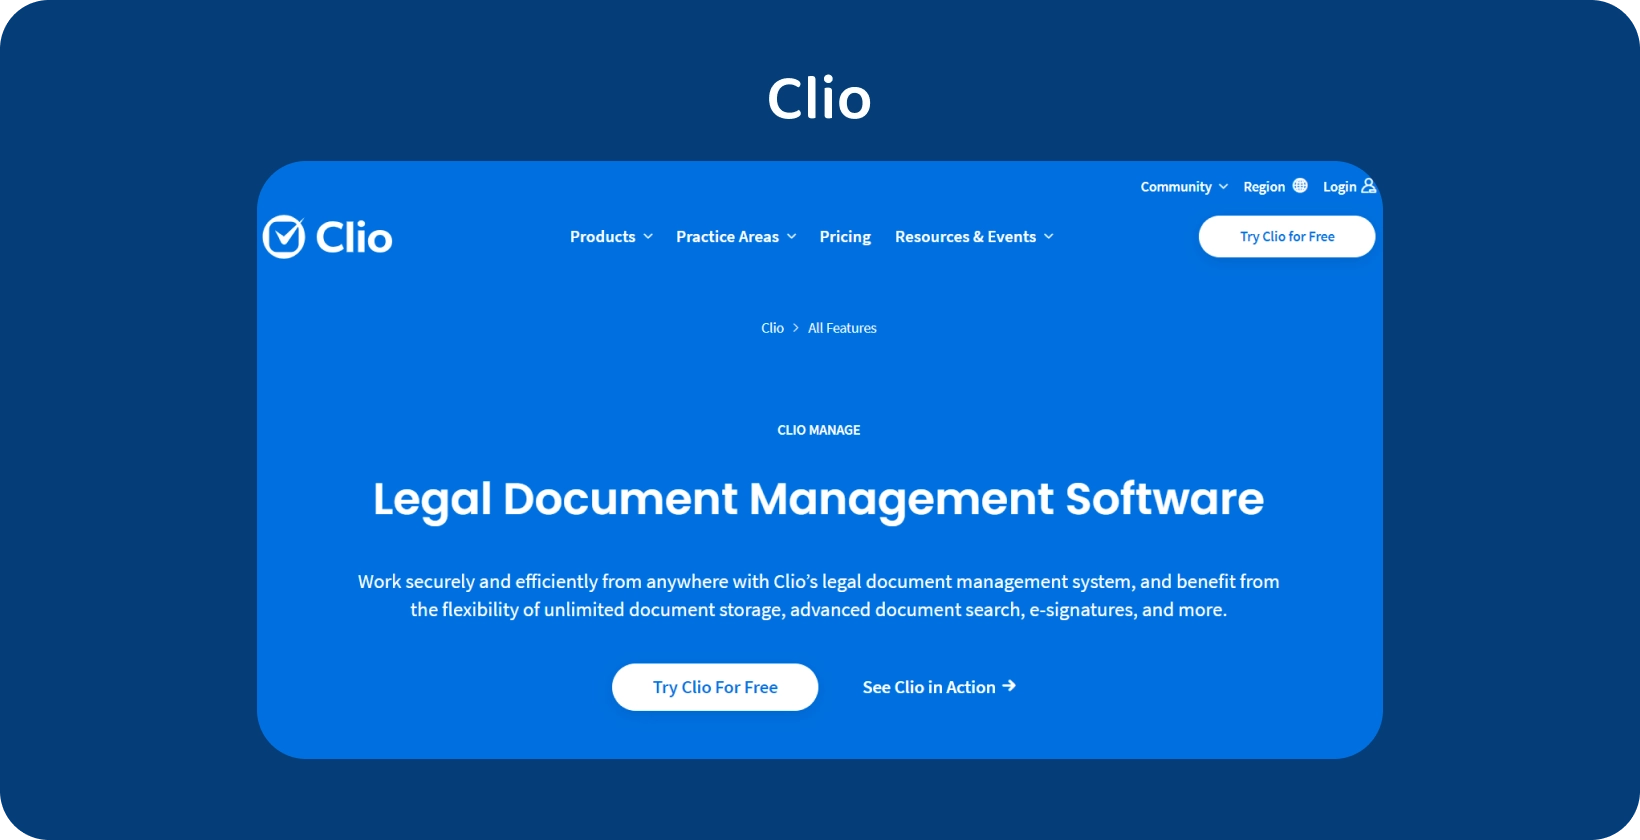 Interfejs użytkownika Clio prezentuje oprogramowanie do zarządzania dokumentami prawnymi, optymalizując zorganizowaną obsługę dokumentacji.